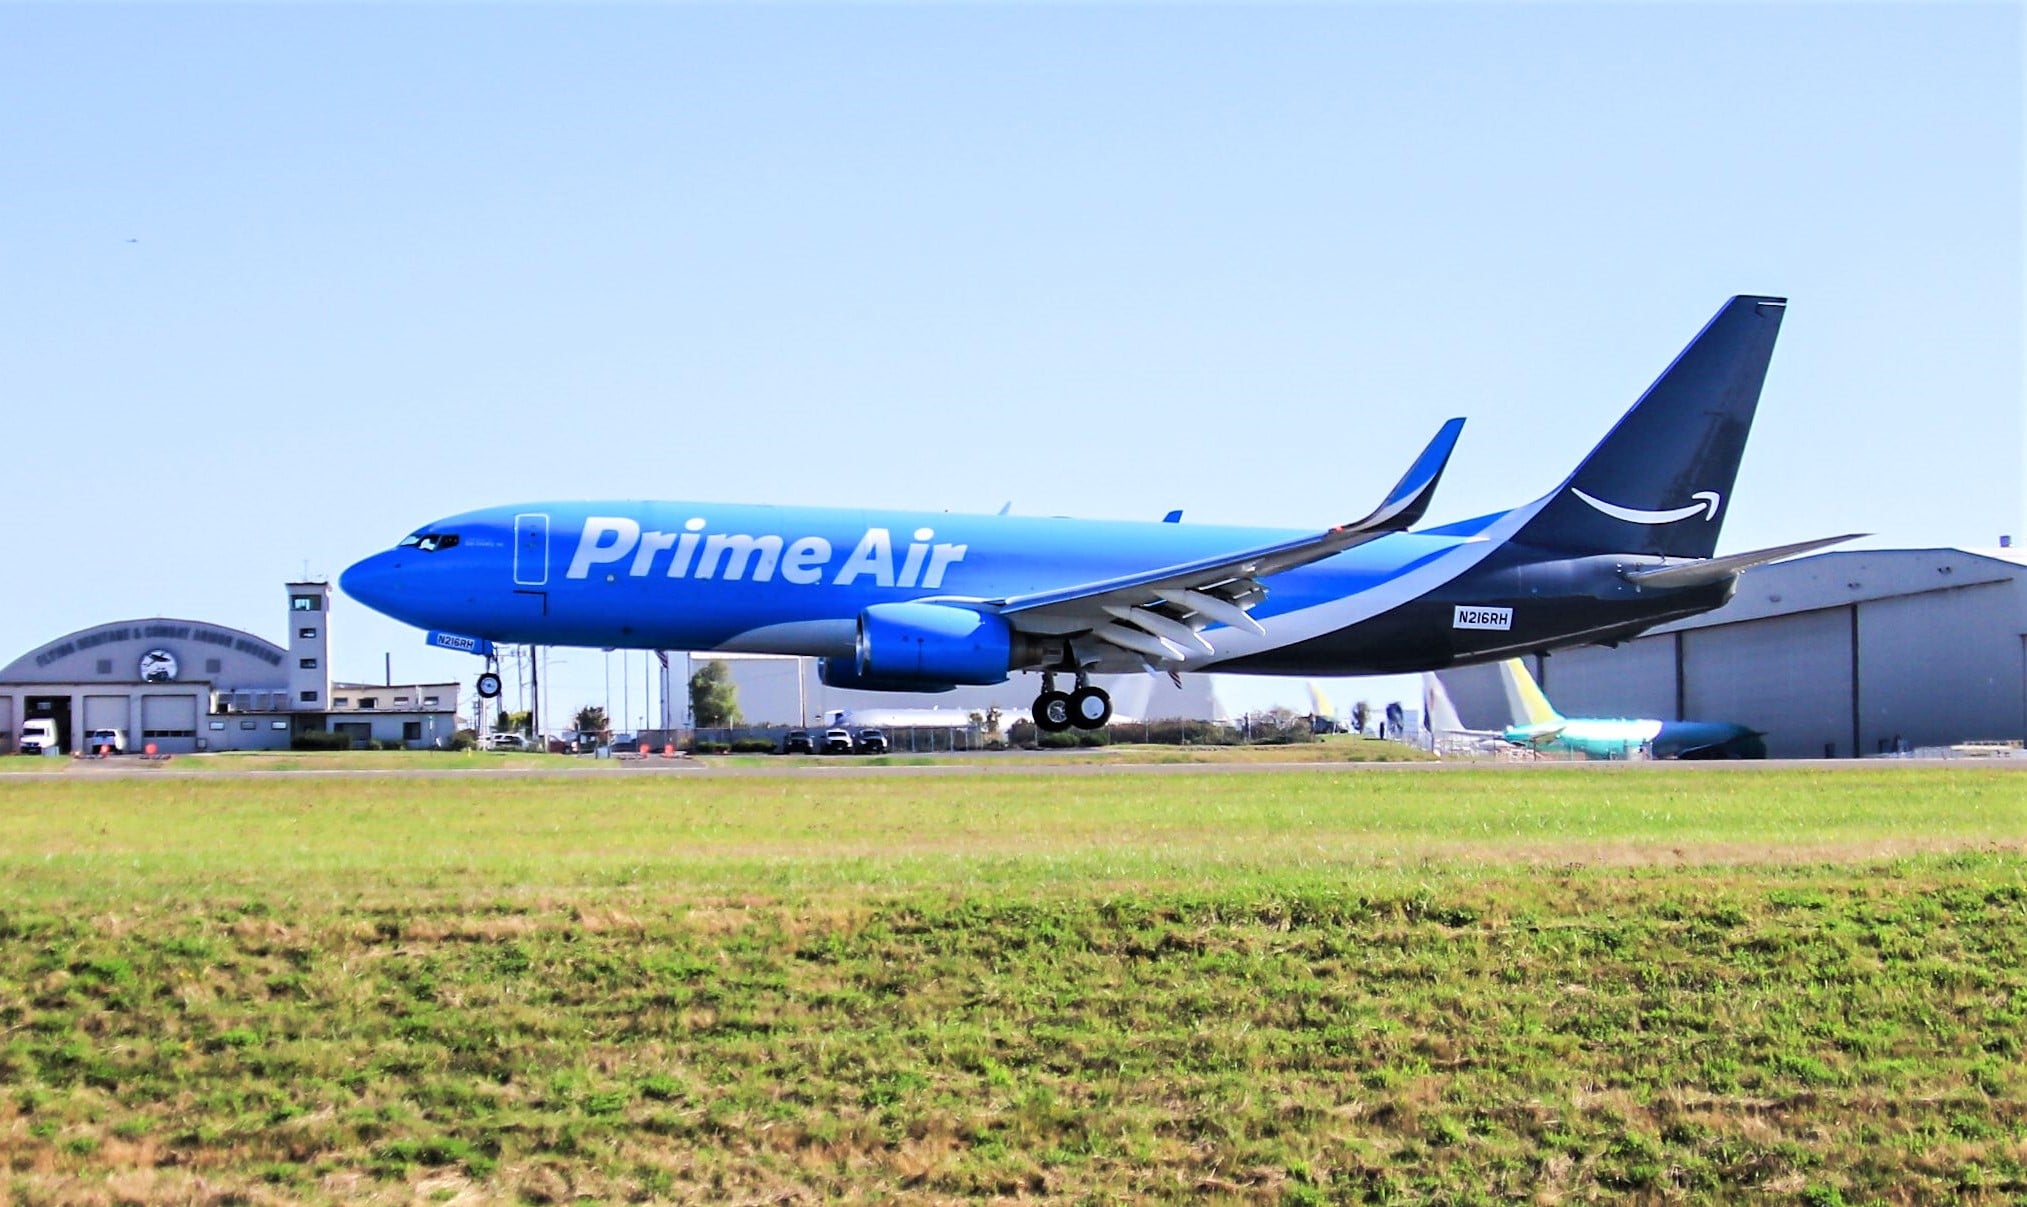 An Amazon 737 freighter. Photo/Amazon